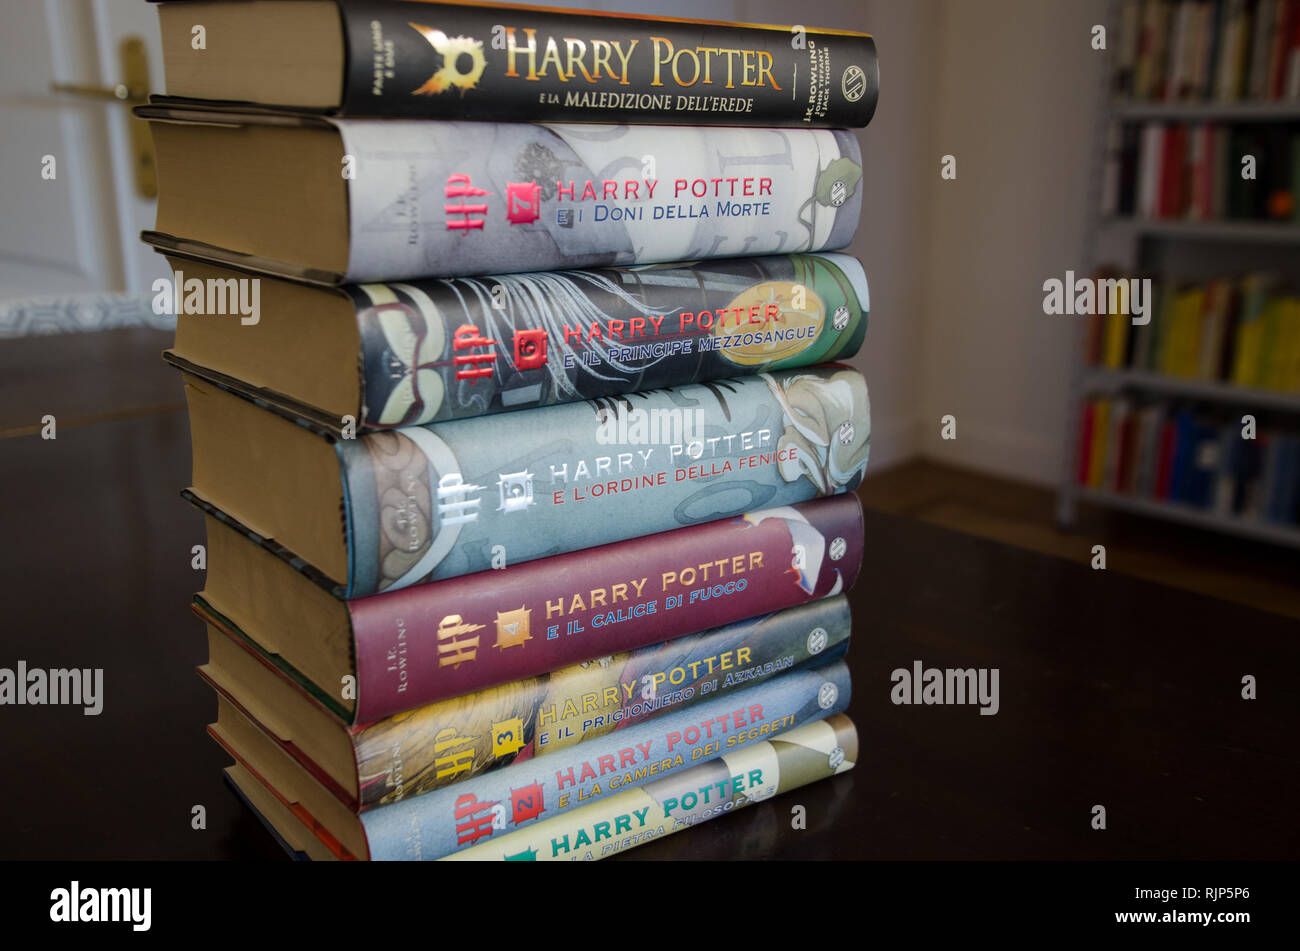 Harry Potter saga. Libri scritti in italiano. Milano, 7 febbraio 2019 Foto  stock - Alamy